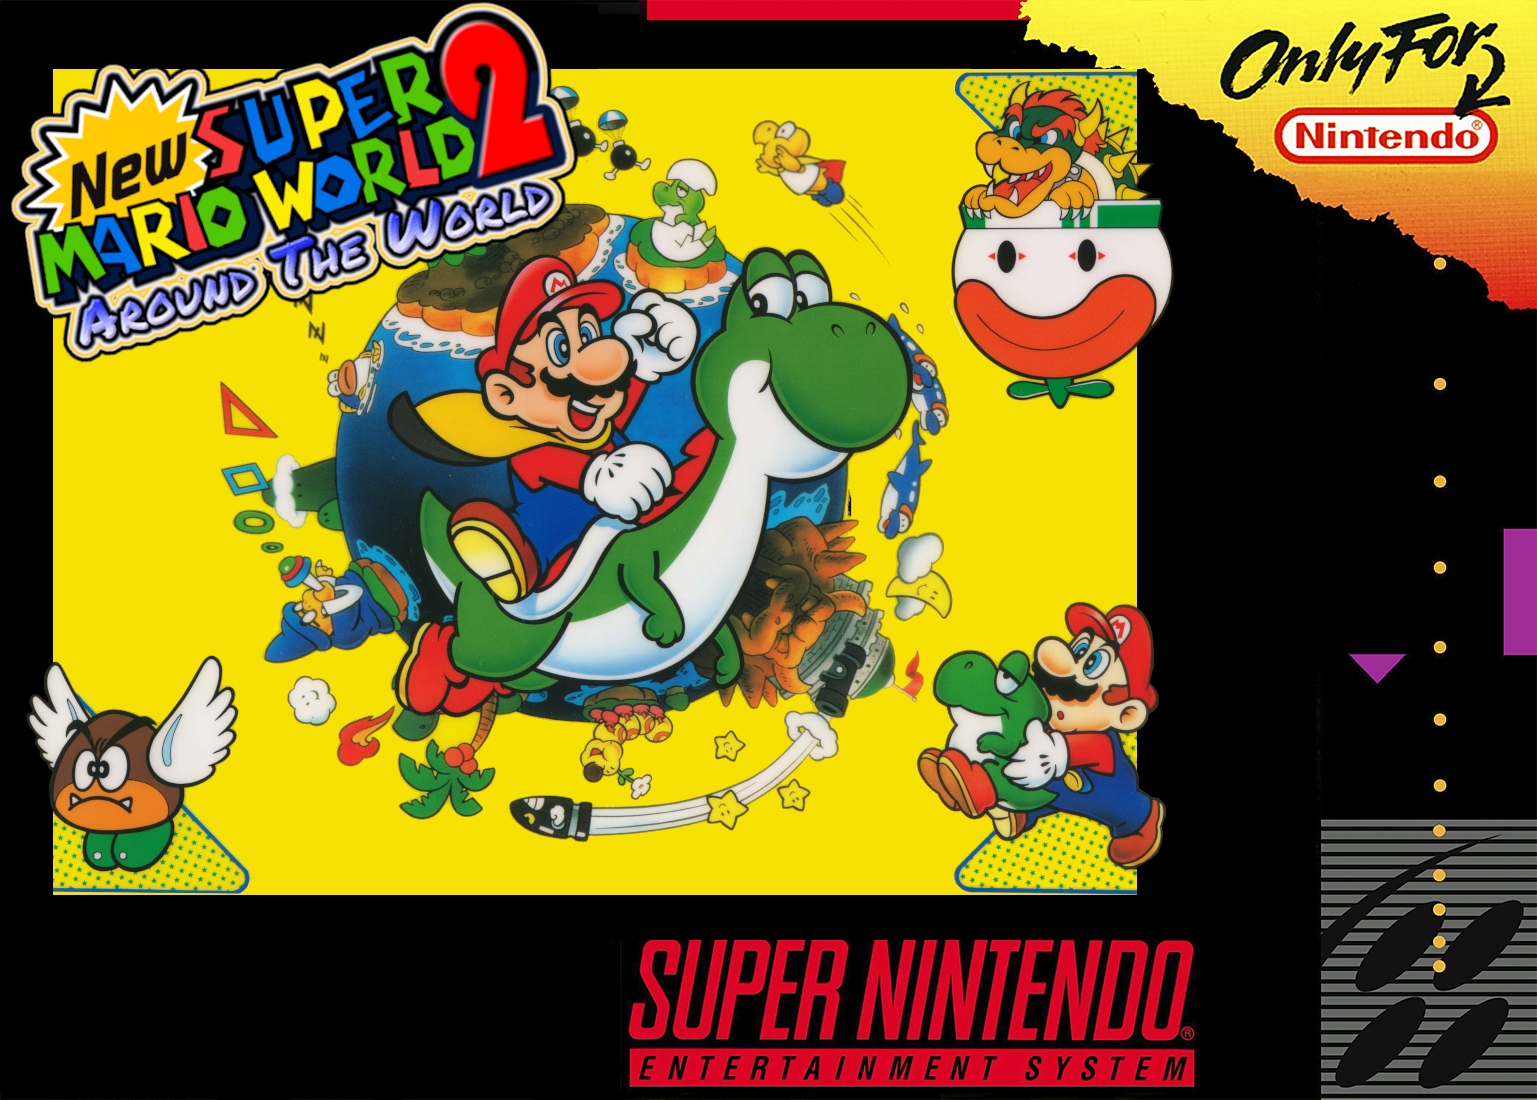 New Super Mario World 2 Around the World